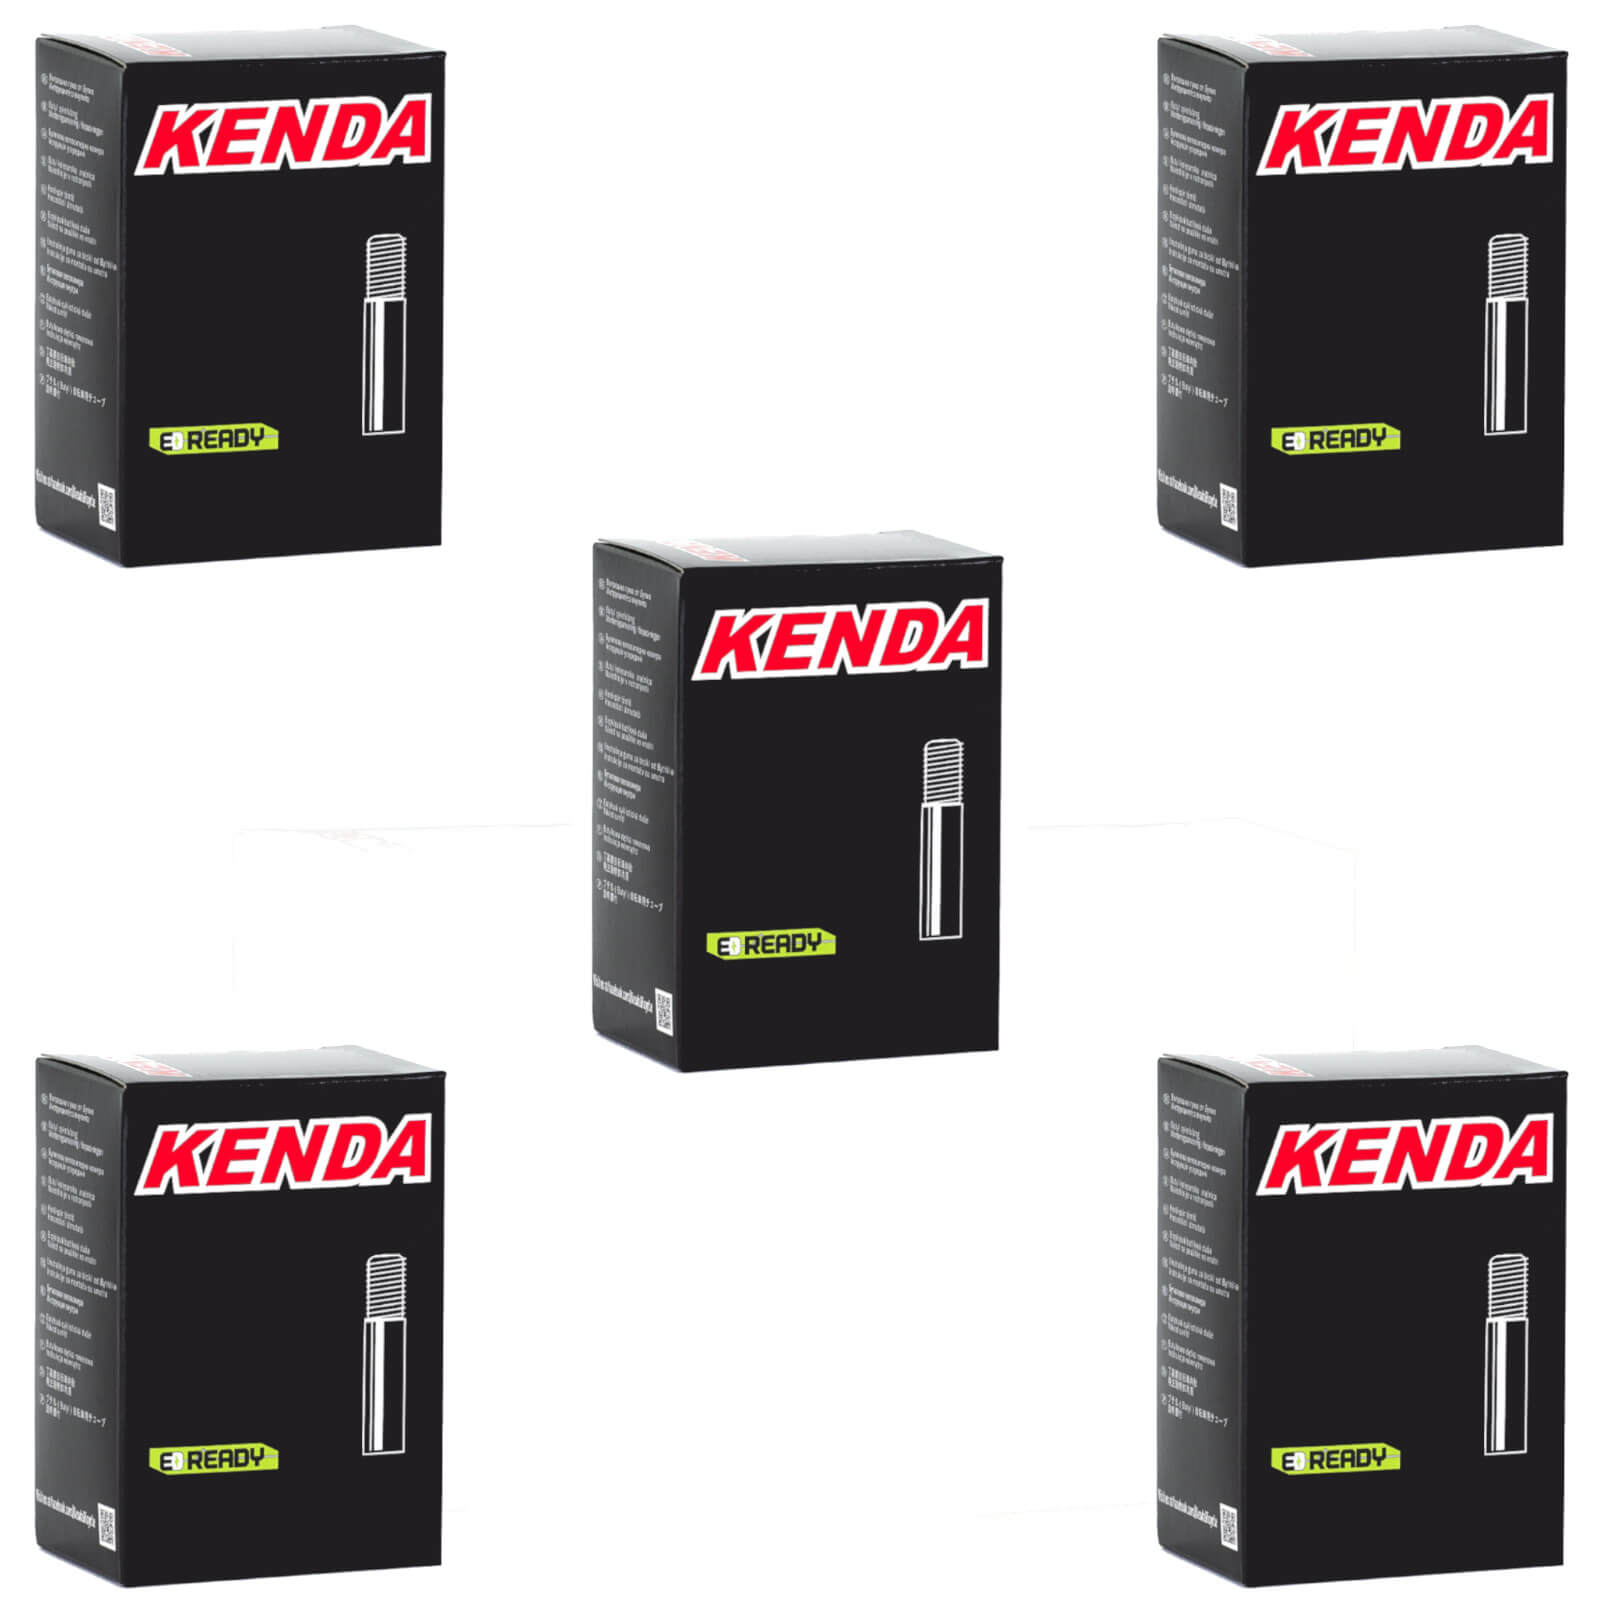 Kenda 16x1.25-1.9" 16 Inch Schrader Valve Bike Inner Tube Pack of 5